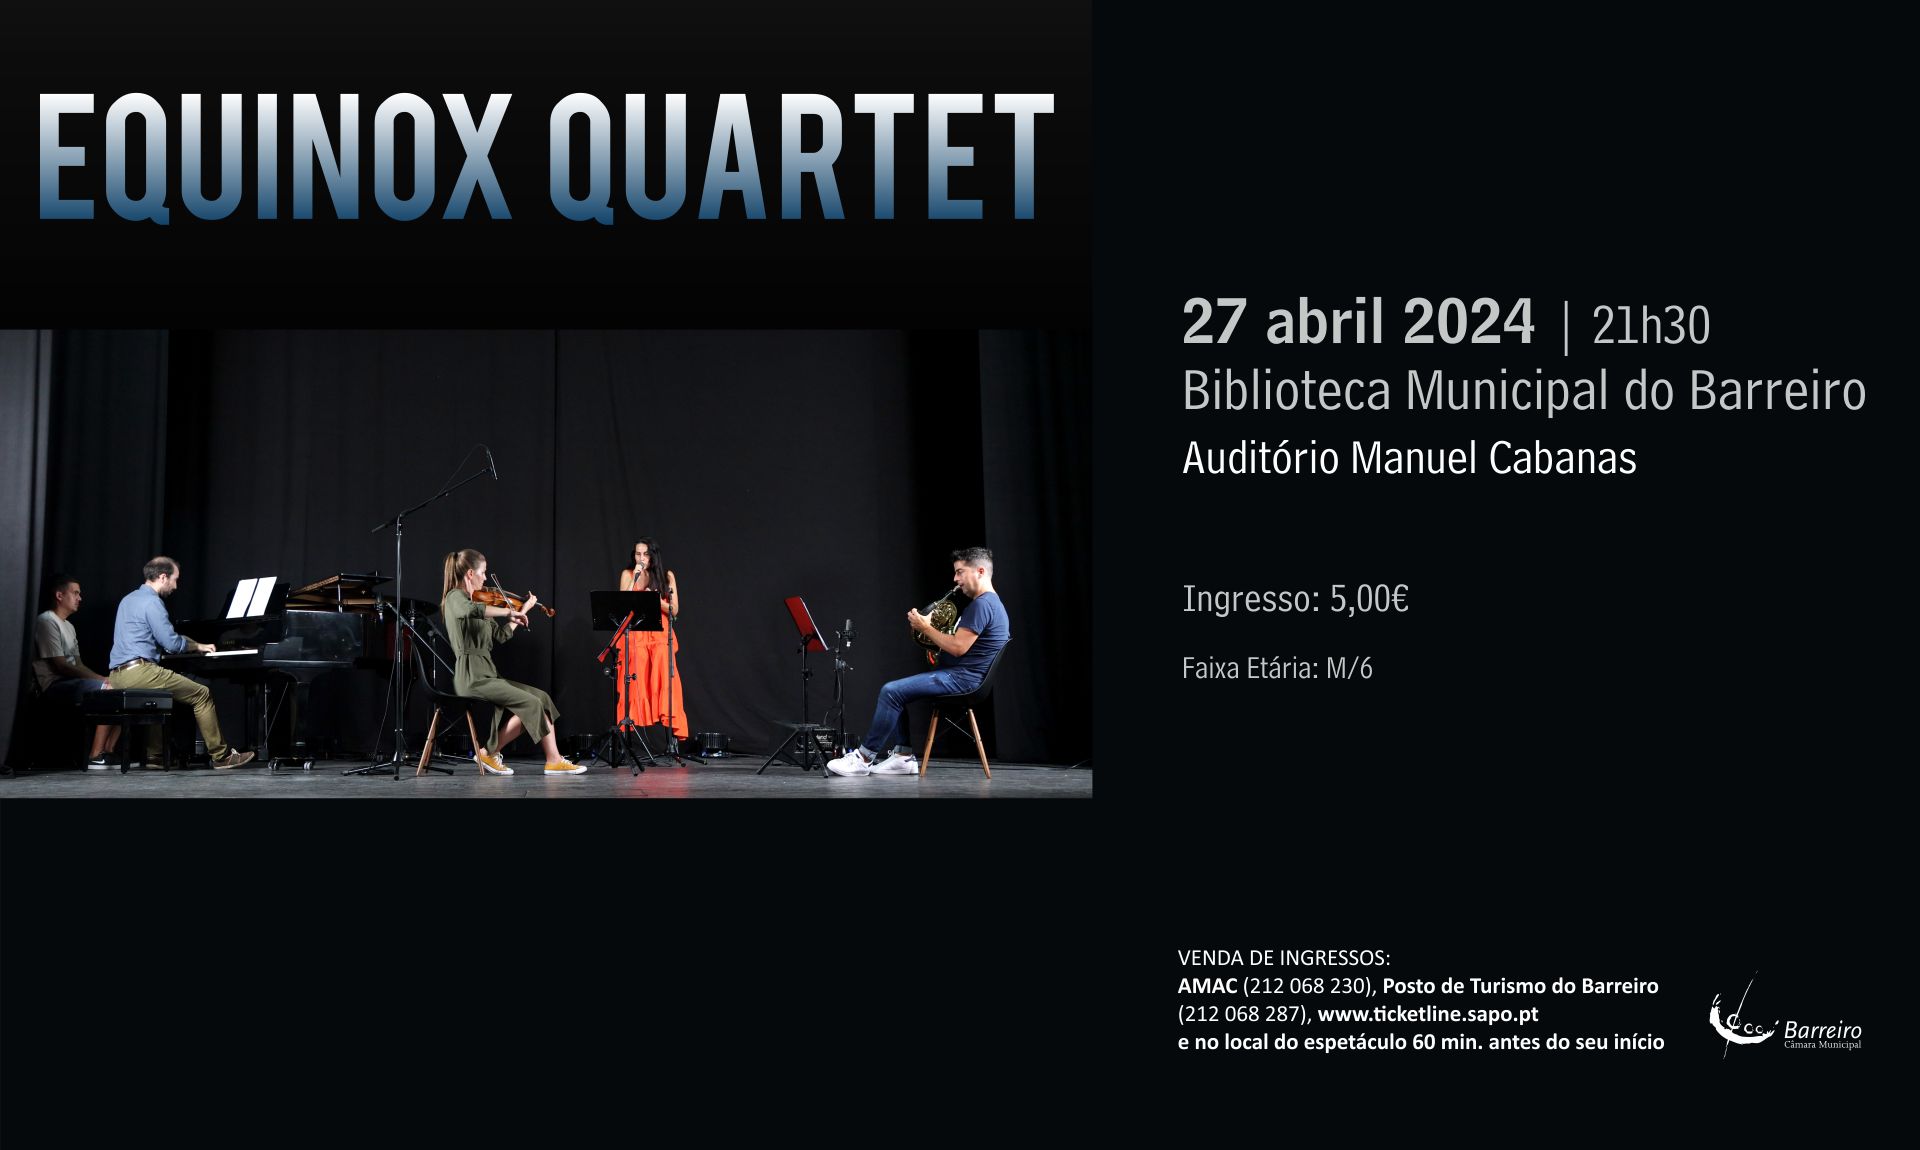 Equinox Quartet | 27 abril | 21h30 | Biblioteca Municipal do Barreiro – Auditório Manuel Cabanas